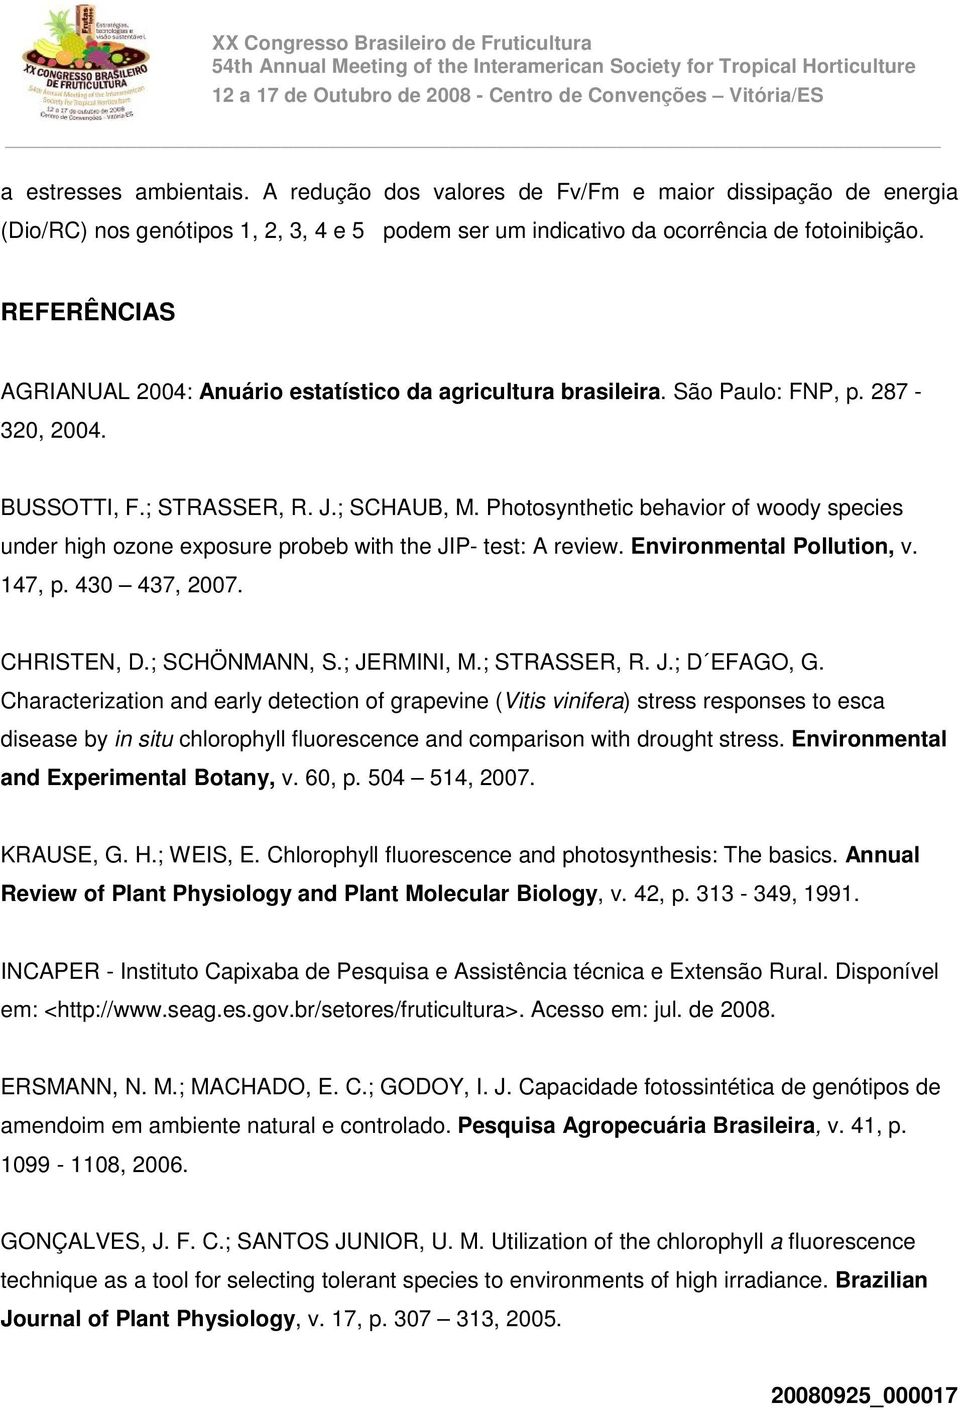 REFERÊNCIAS AGRIANUAL 2004: Anuário estatístico da agricultura brasileira. São Paulo: FNP, p. 287-320, 2004. BUSSOTTI, F.; STRASSER, R. J.; SCHAUB, M.